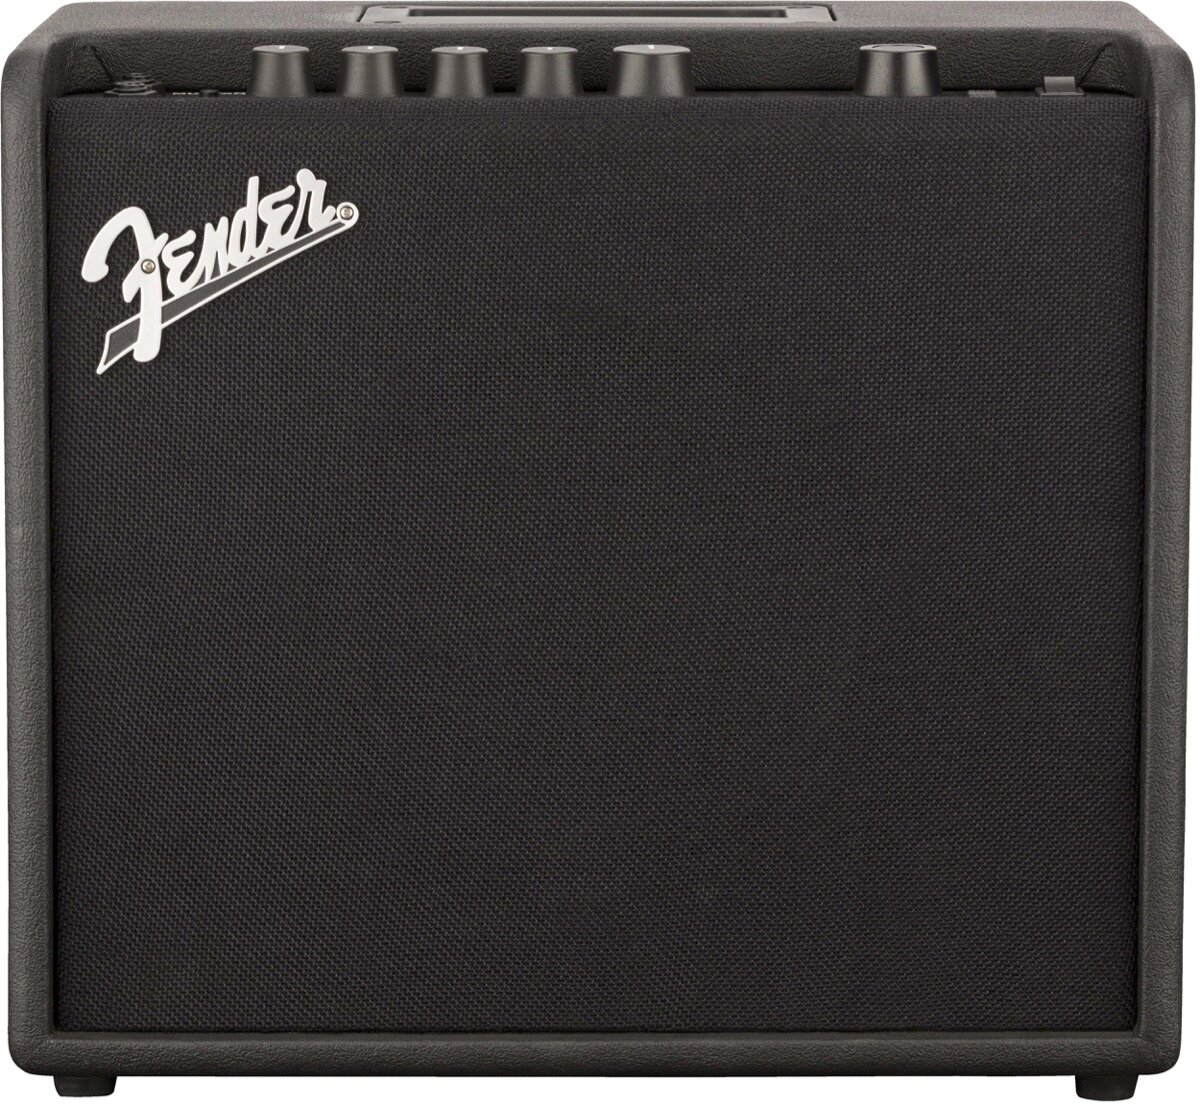 Fender Mustang LT25 Digital Guitar Combo Amp 25W